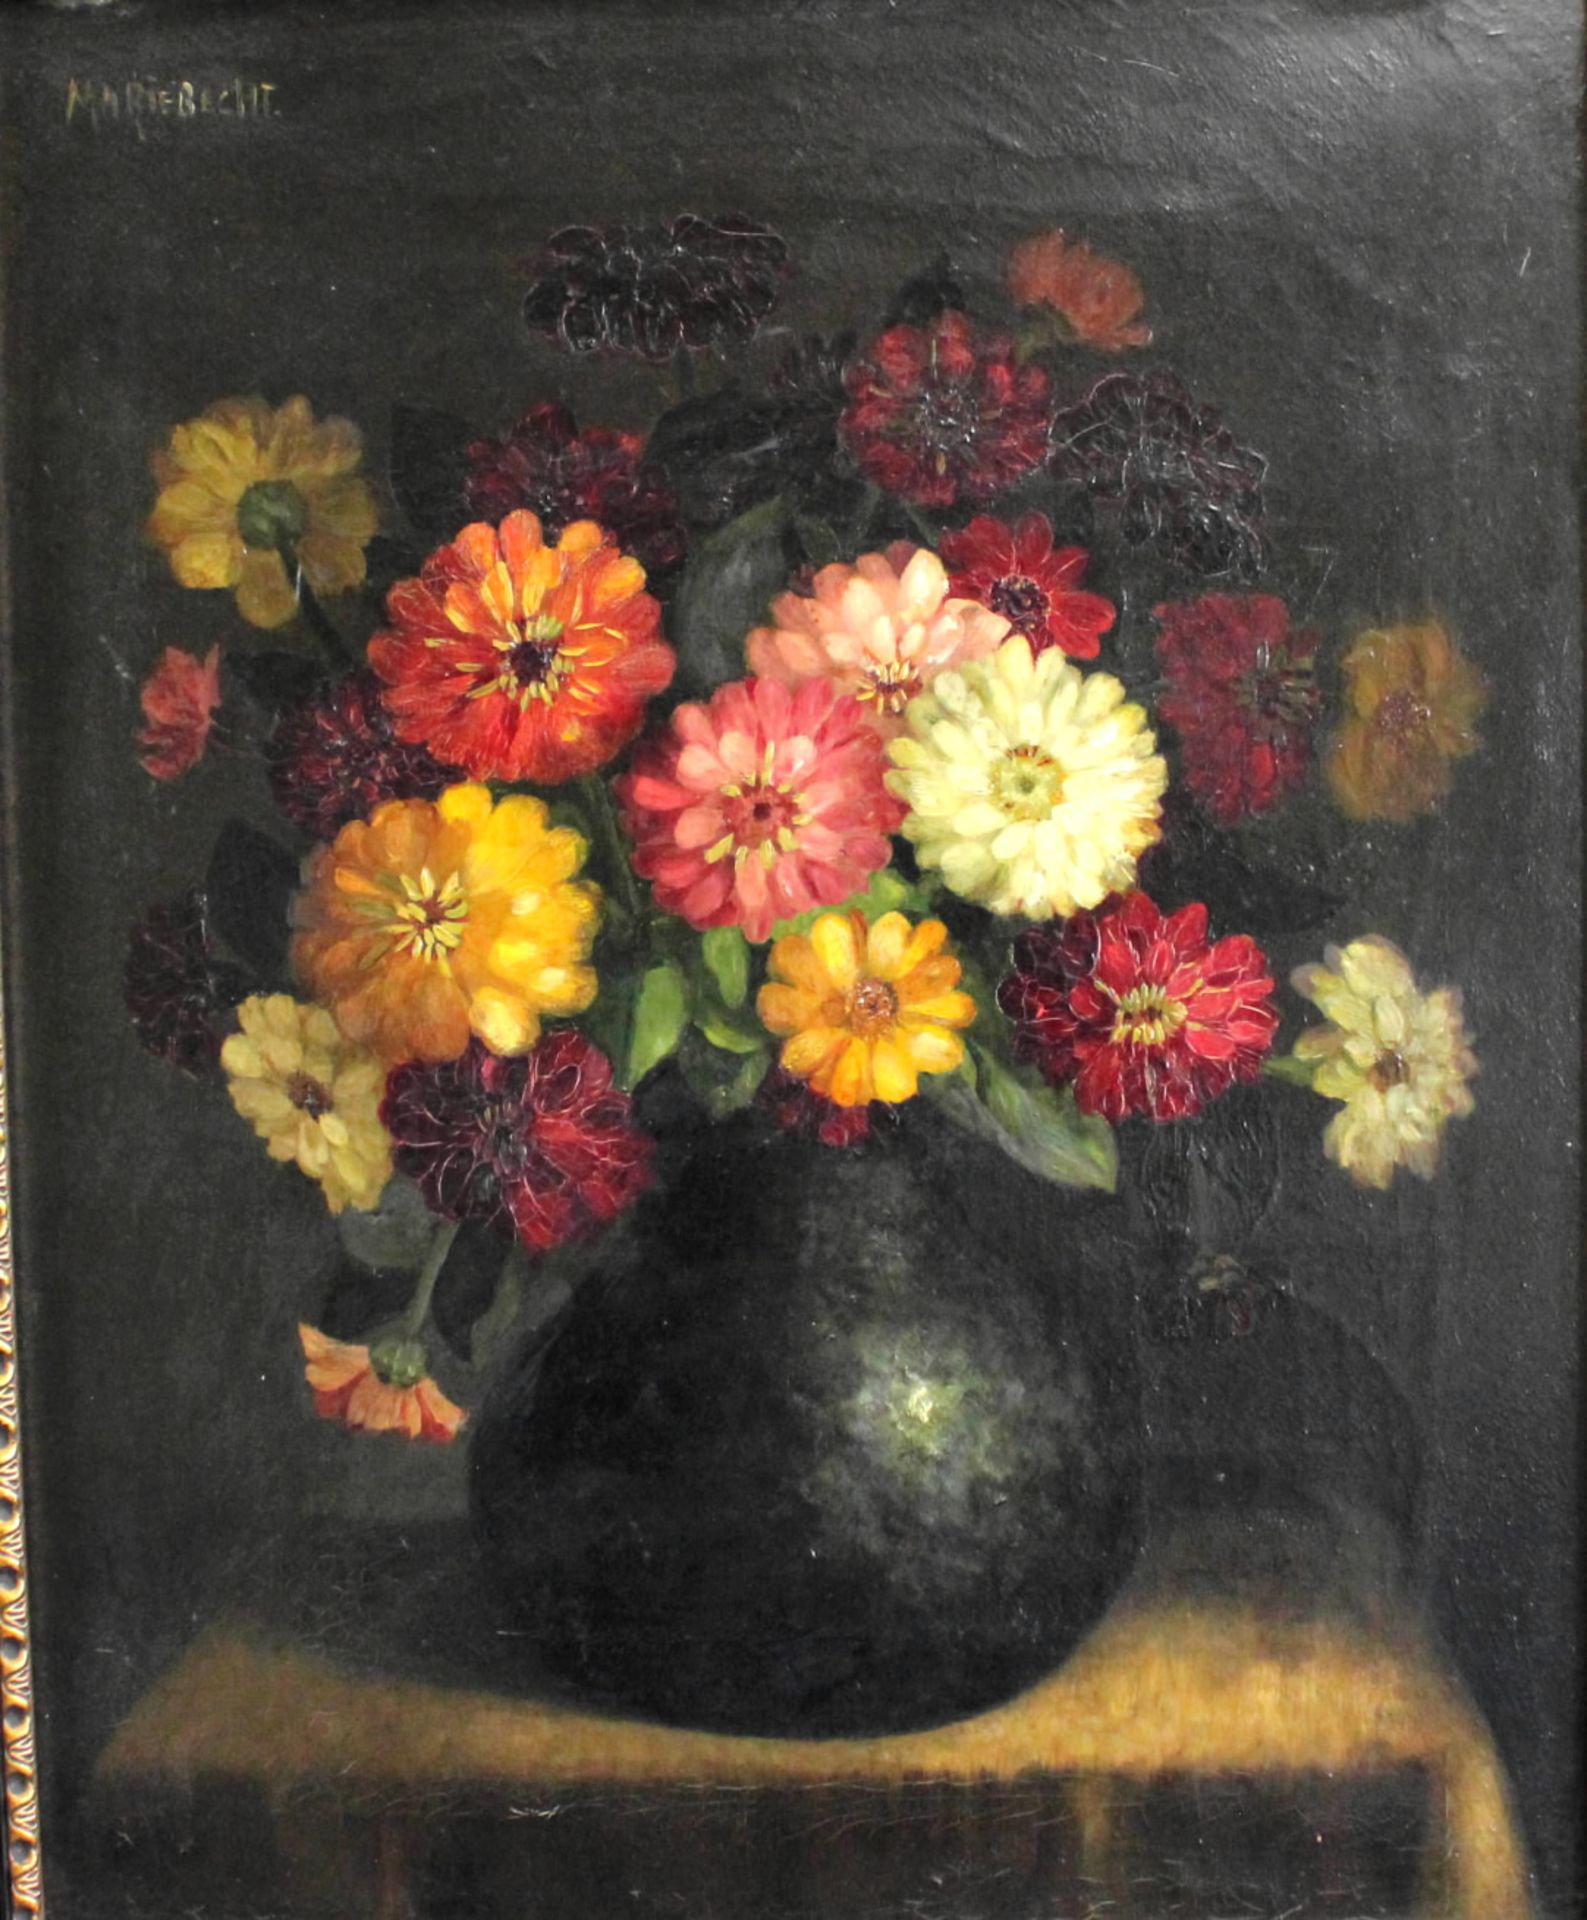 Maria Johanna Wilhelmina Becht (*1881-1953) "Blumen Stillleben" Öl/Leinw., sign., 47 x 38 cm